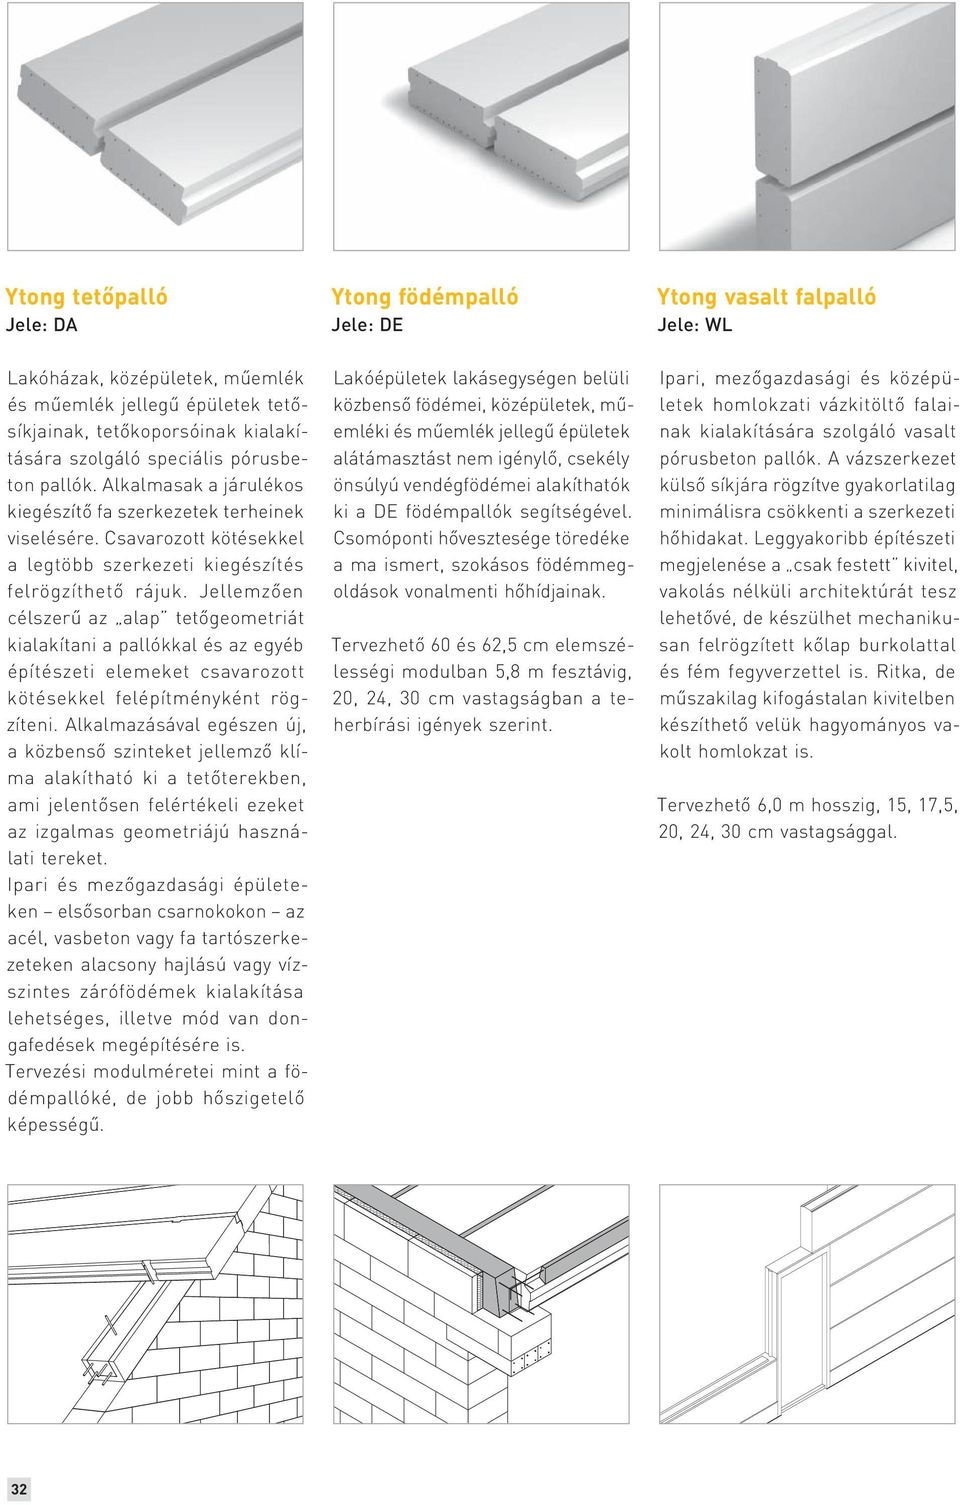 Ytong tervezési alapadatok - PDF Ingyenes letöltés